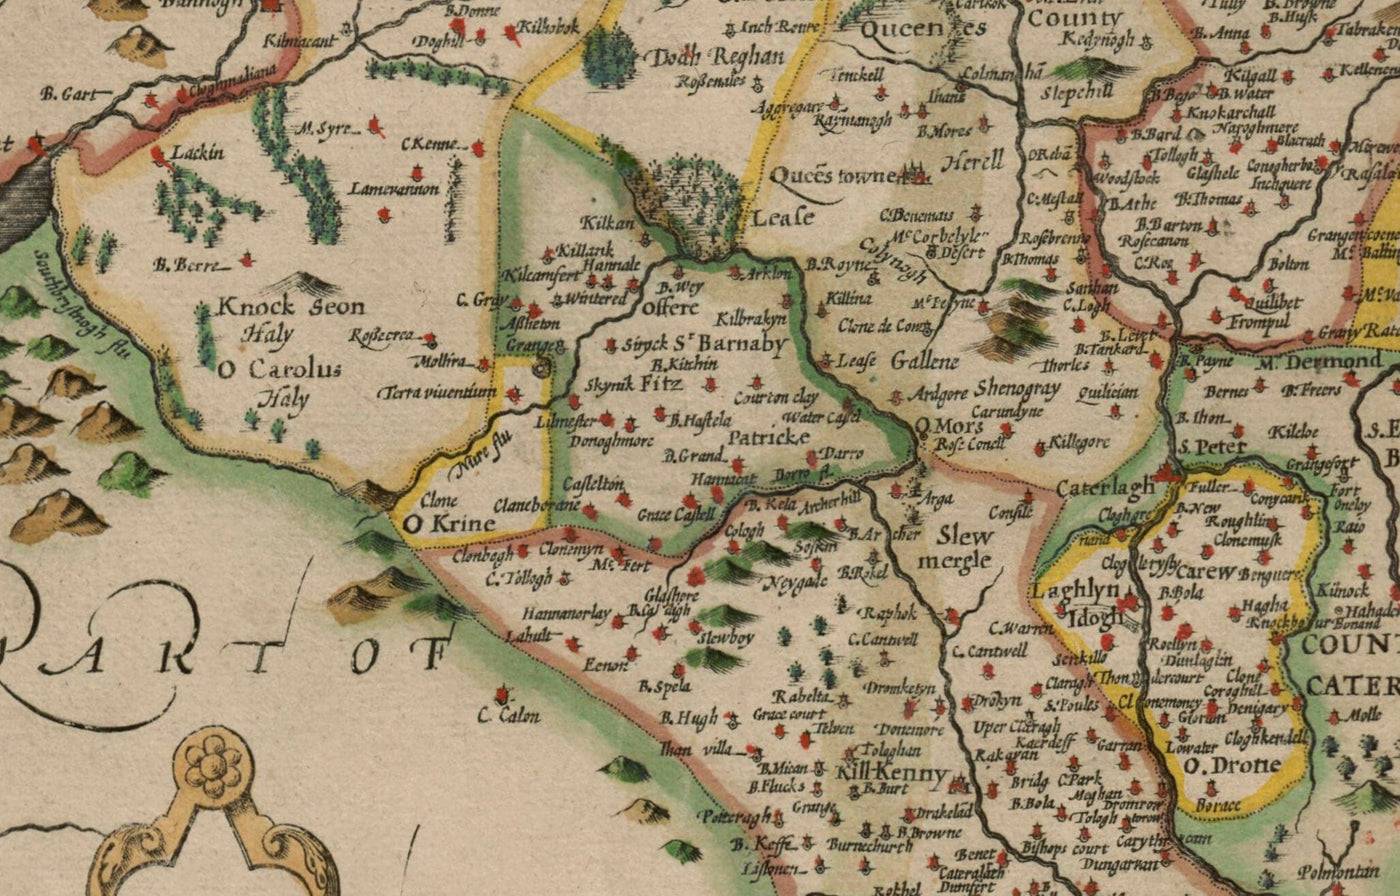 Alte Karte von Leinster, Irland im Jahre 1611 von John Speed ​​- County Dublin, Kilkenny, Meath